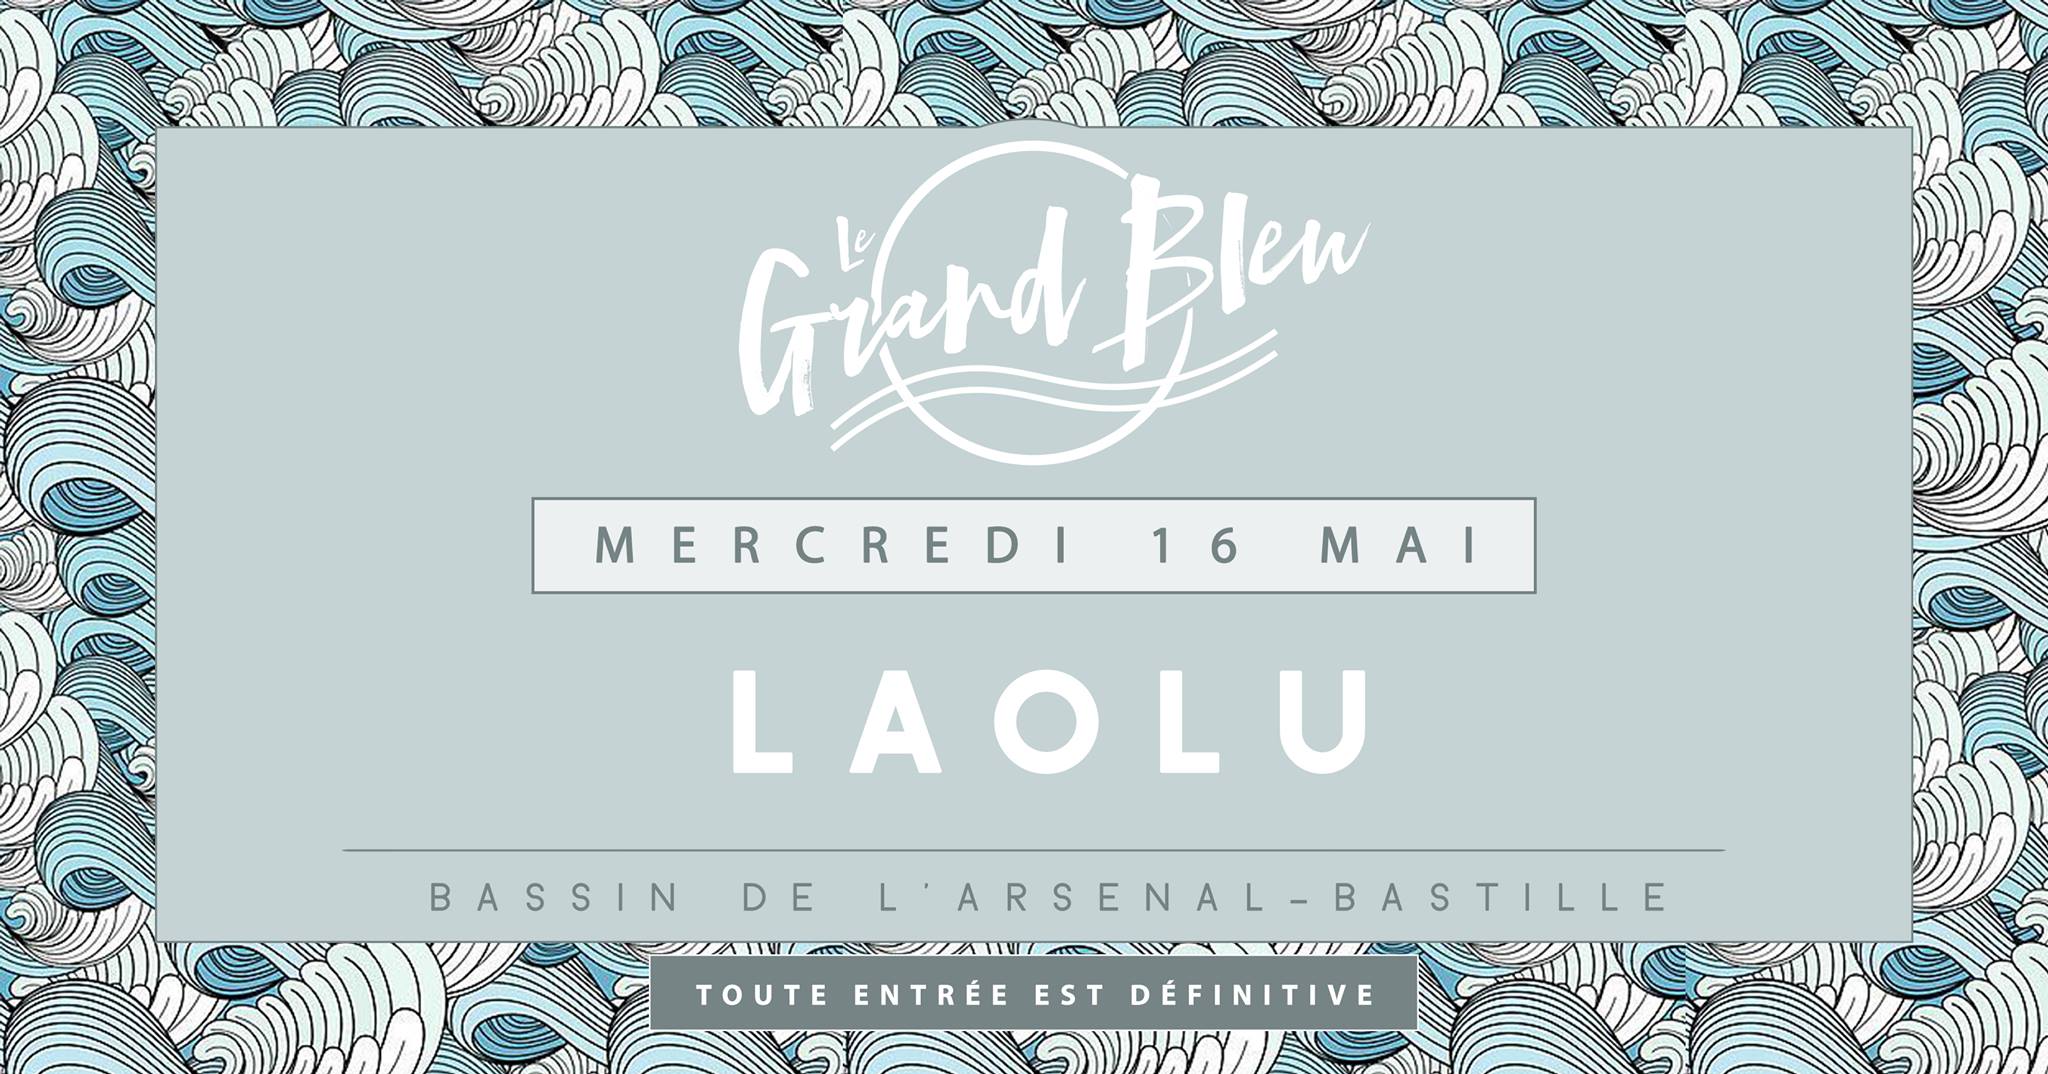 Laolu - @Grand Bleu